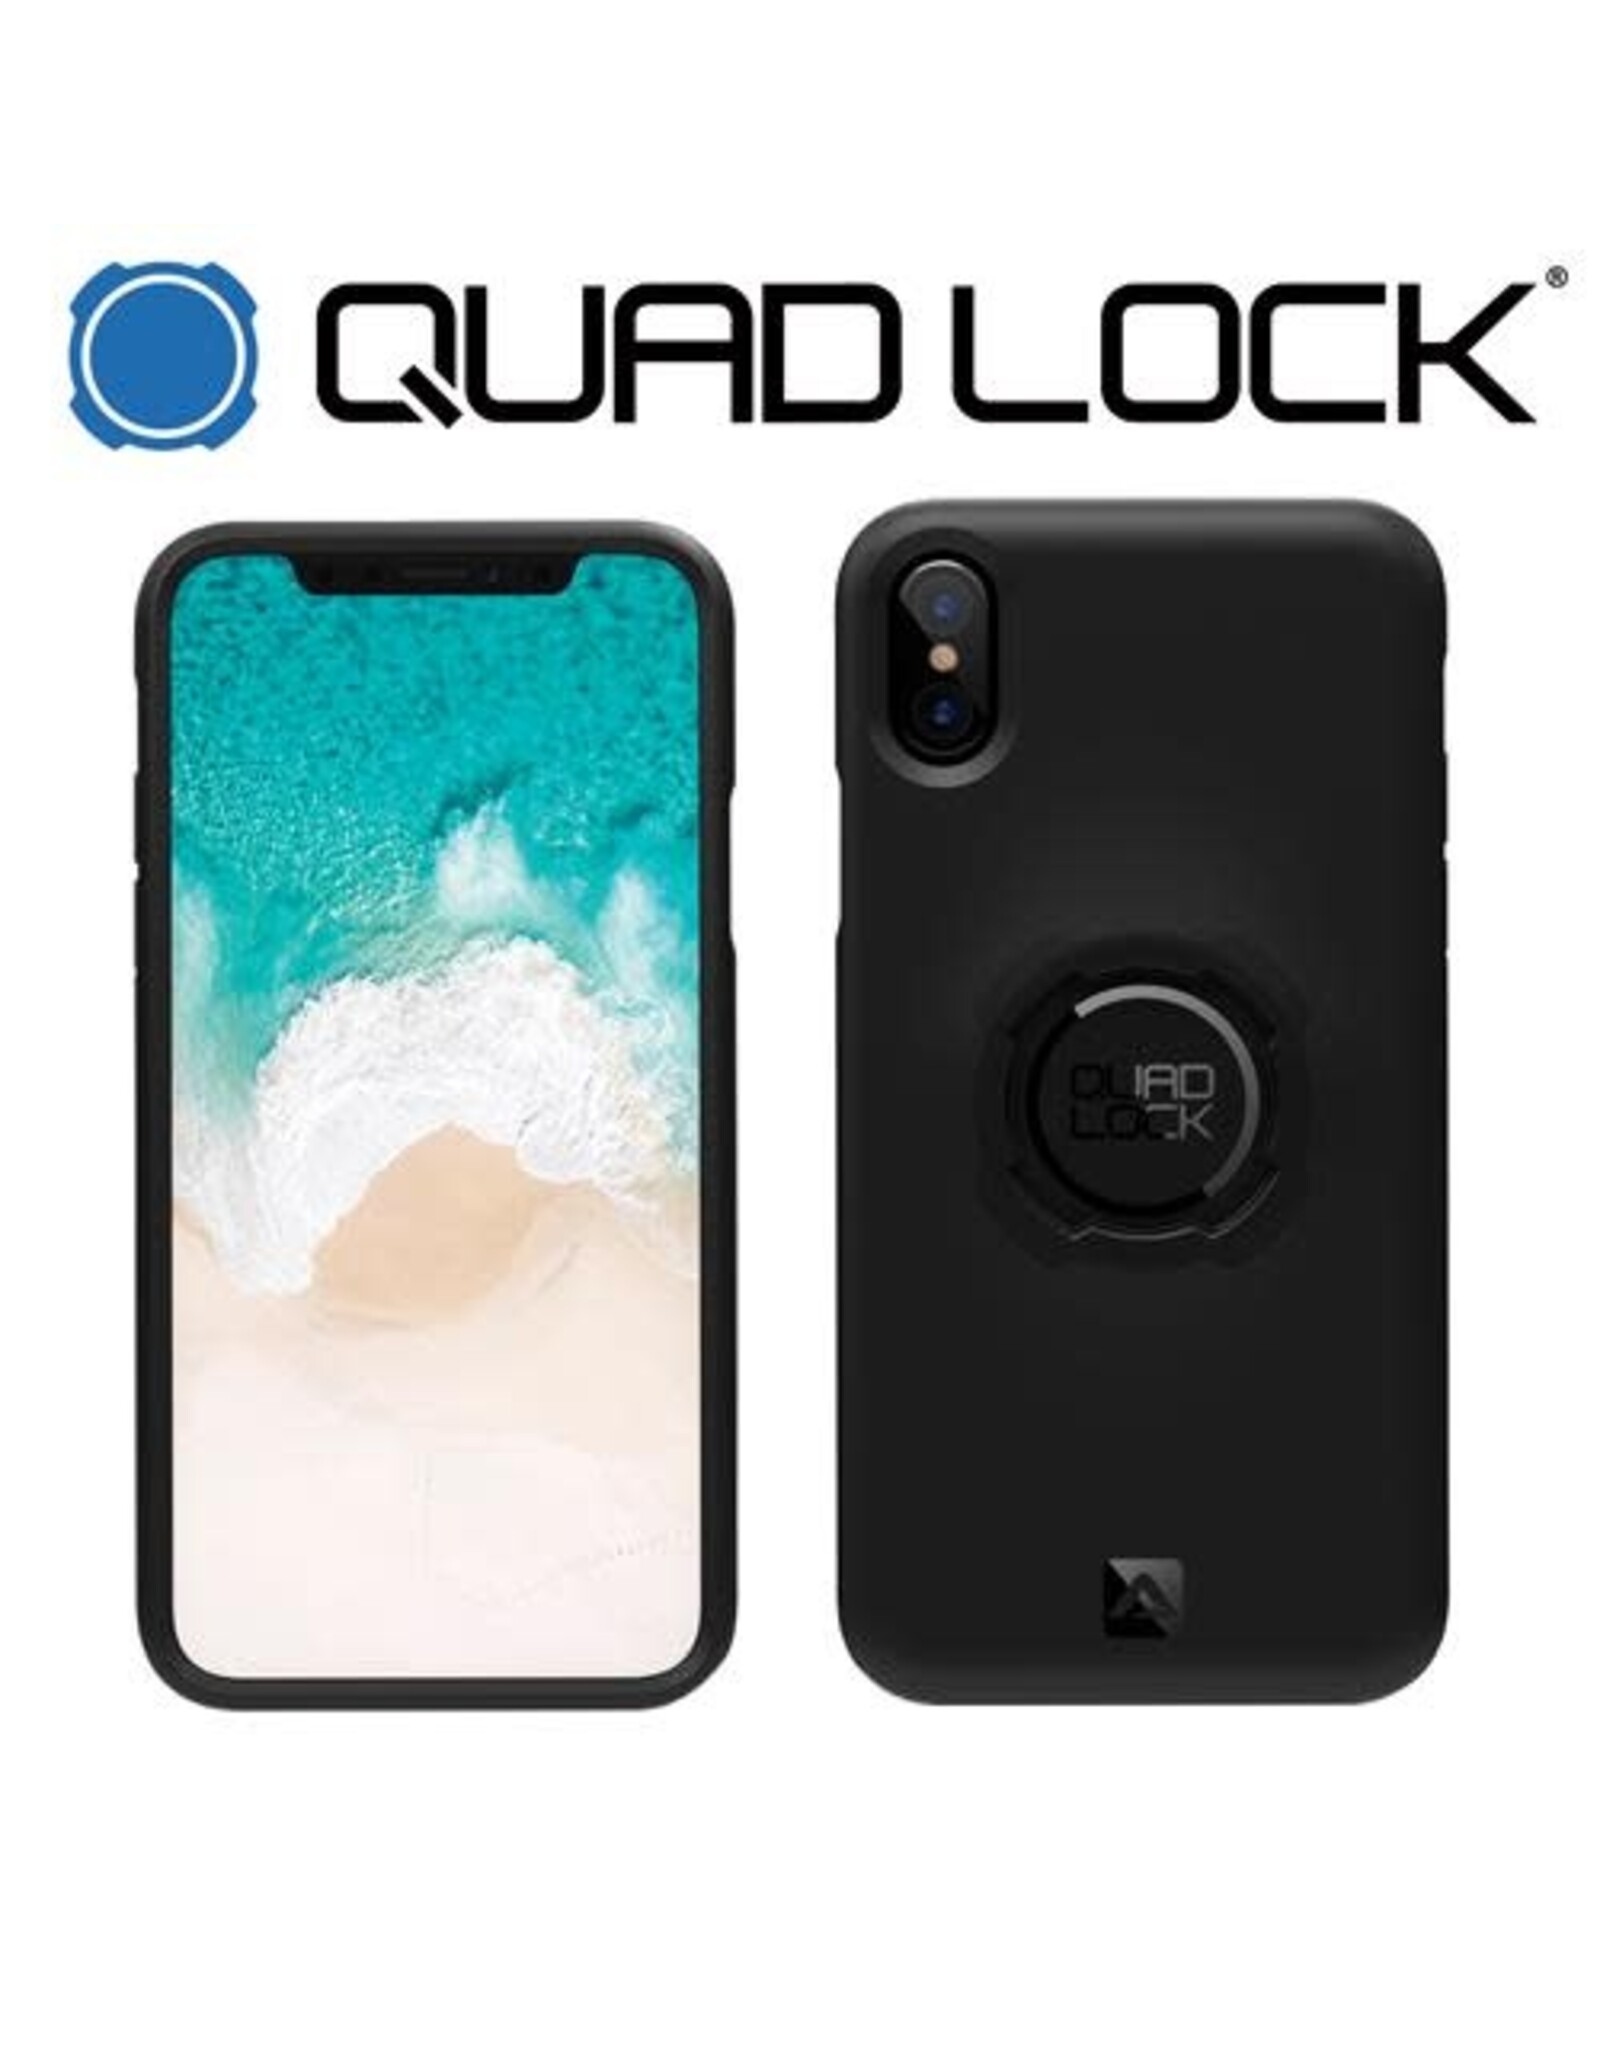 QUAD LOCK QUAD LOCK FOR iPHONE X-XS MAX PHONE CASE